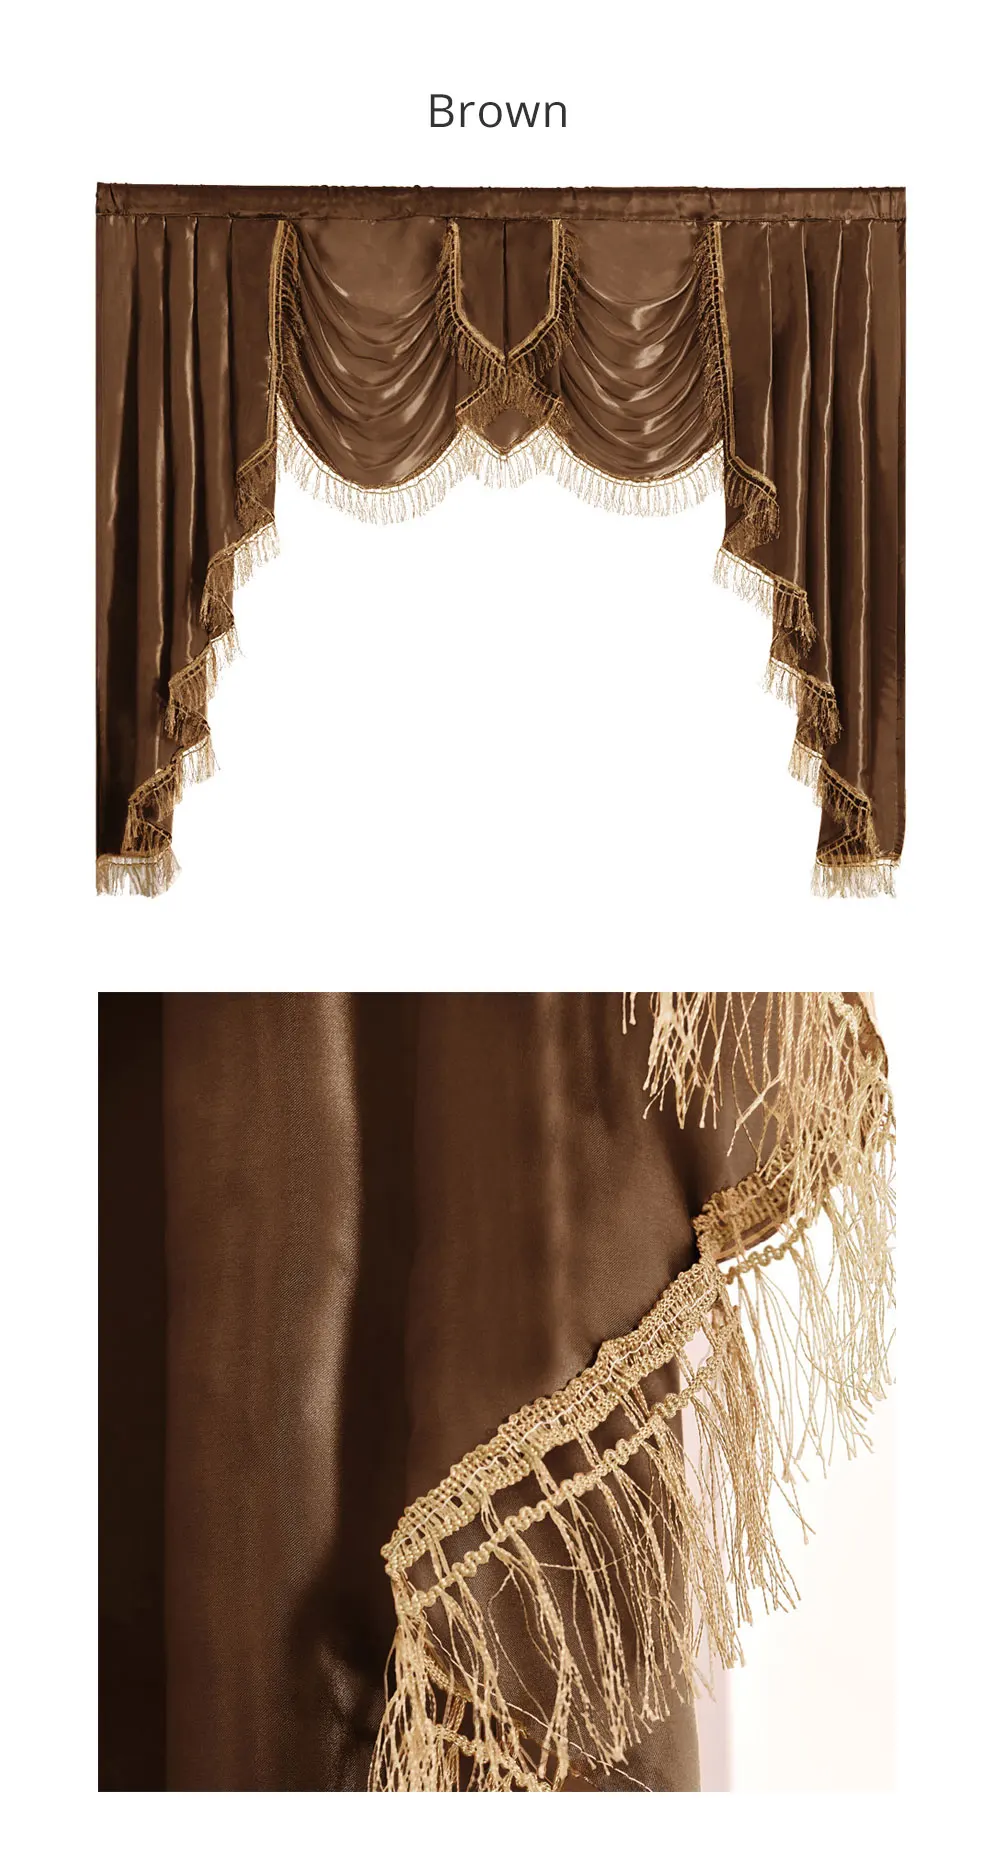 NAPEARL 1 шт. роскошный балдахин шторы короткие однотонные капли для спальни Европейский стиль полу тени элегантный декор панели деревенский